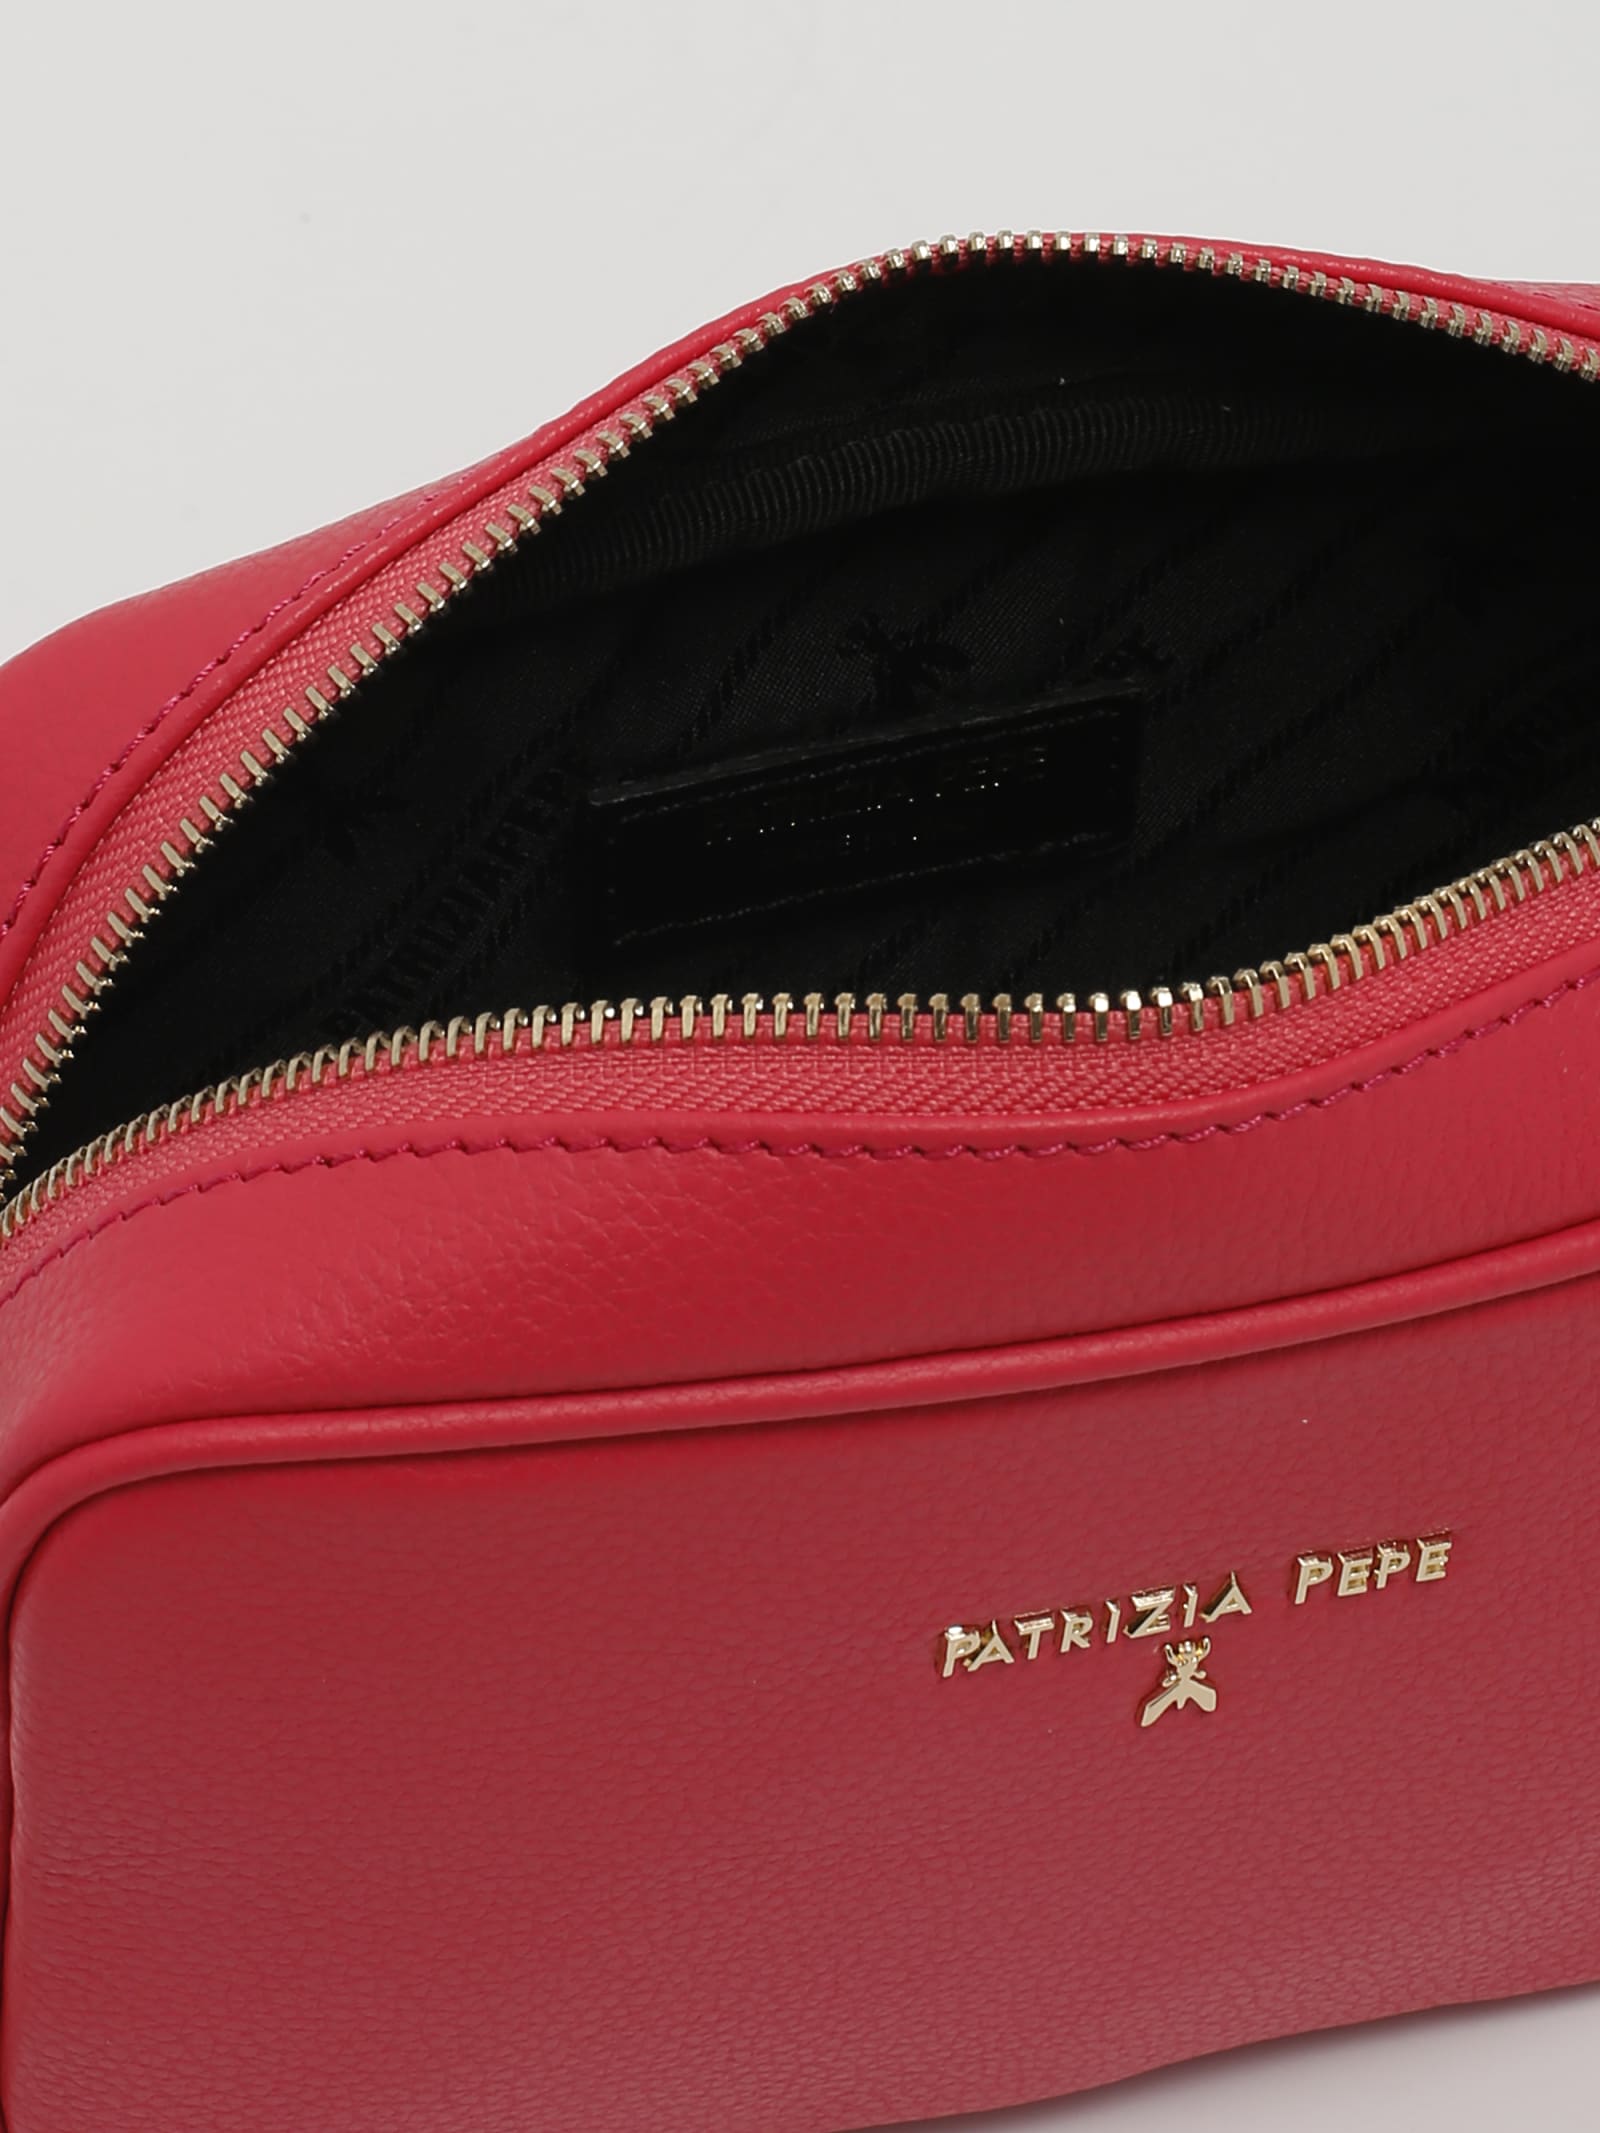 Shop Patrizia Pepe Leather Clutch In Corallo